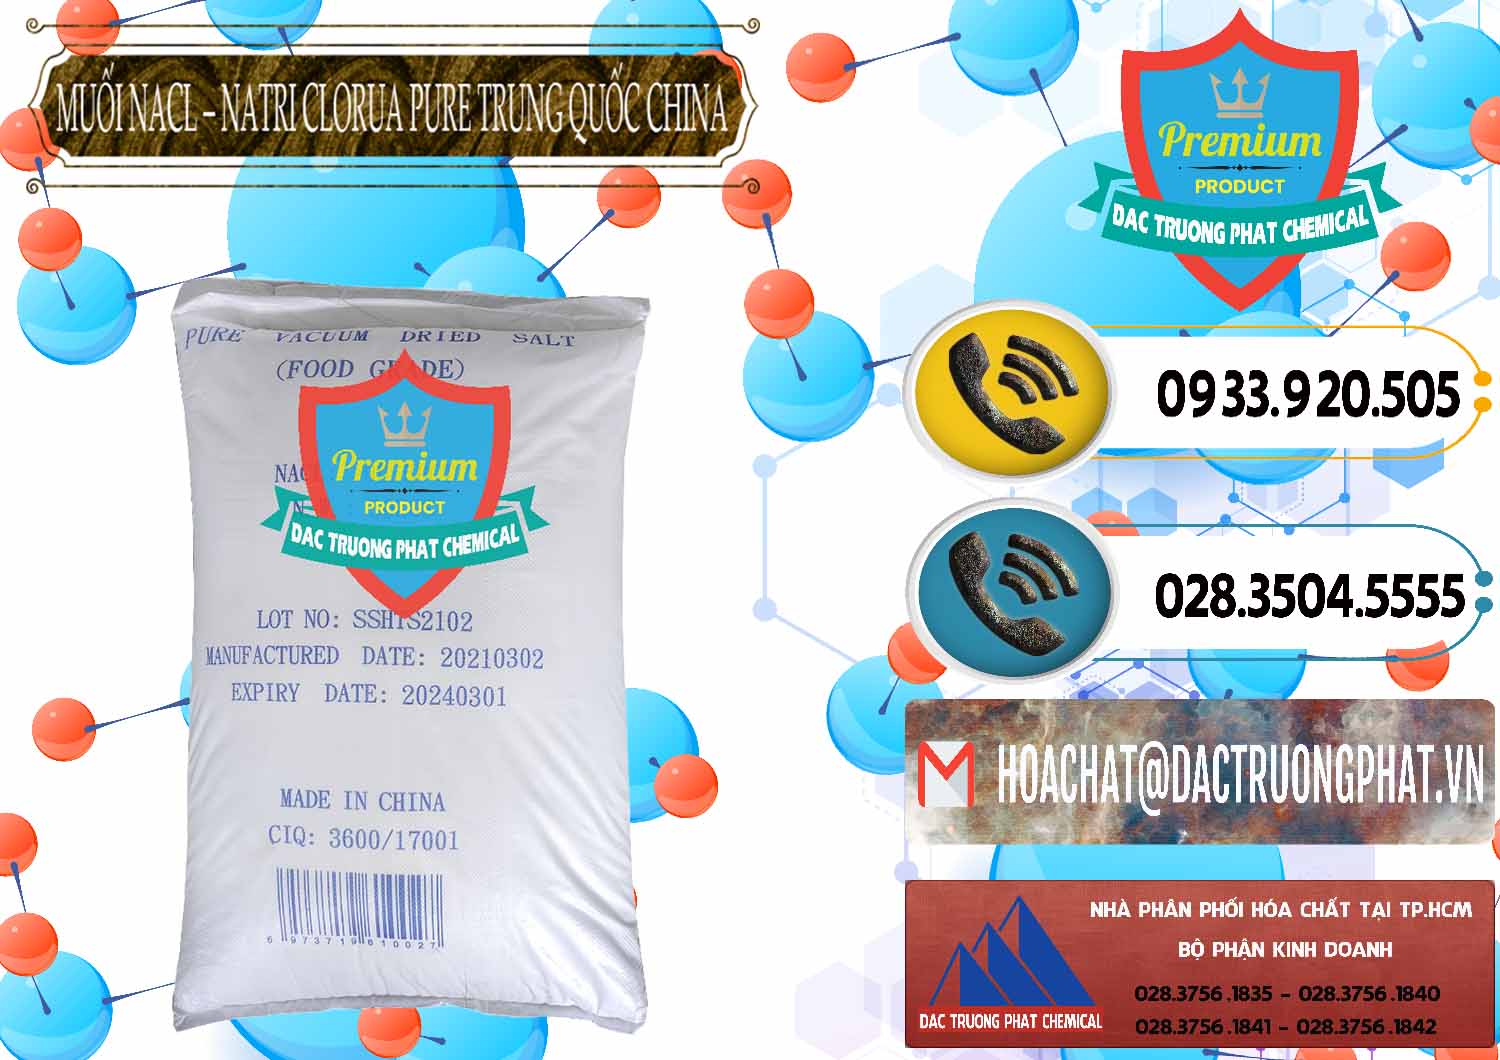 Đơn vị phân phối & bán Muối NaCL – Sodium Chloride Pure Trung Quốc China - 0230 - Nhà cung cấp ( phân phối ) hóa chất tại TP.HCM - hoachatdetnhuom.vn